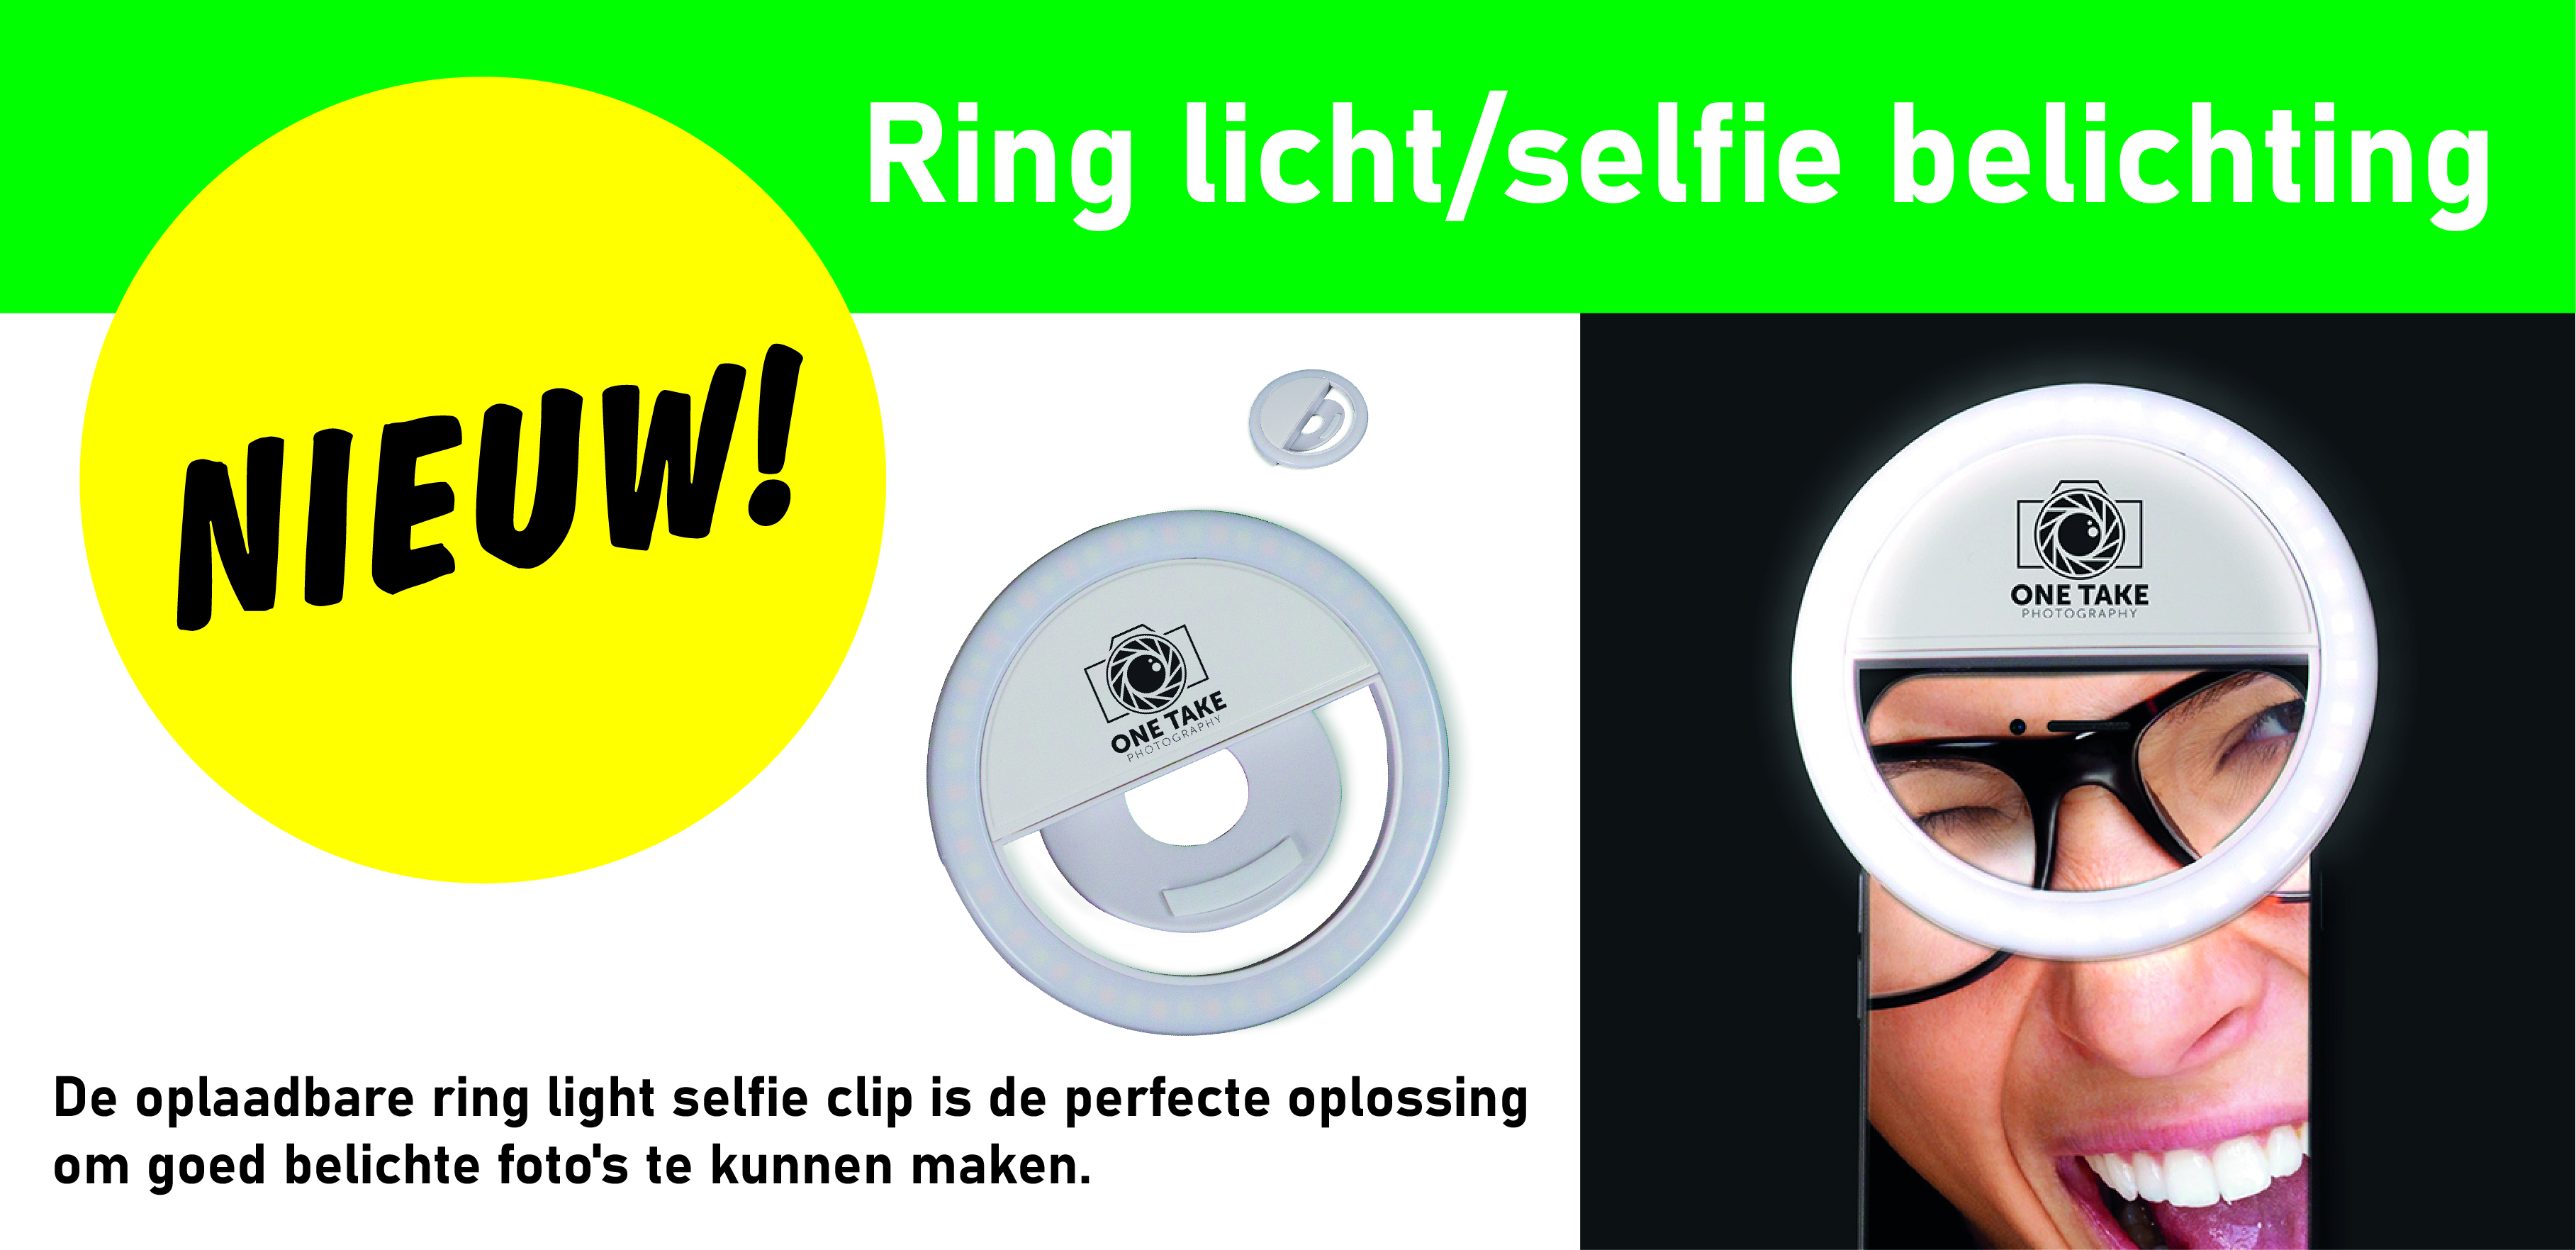 Ring licht/selfie belichting